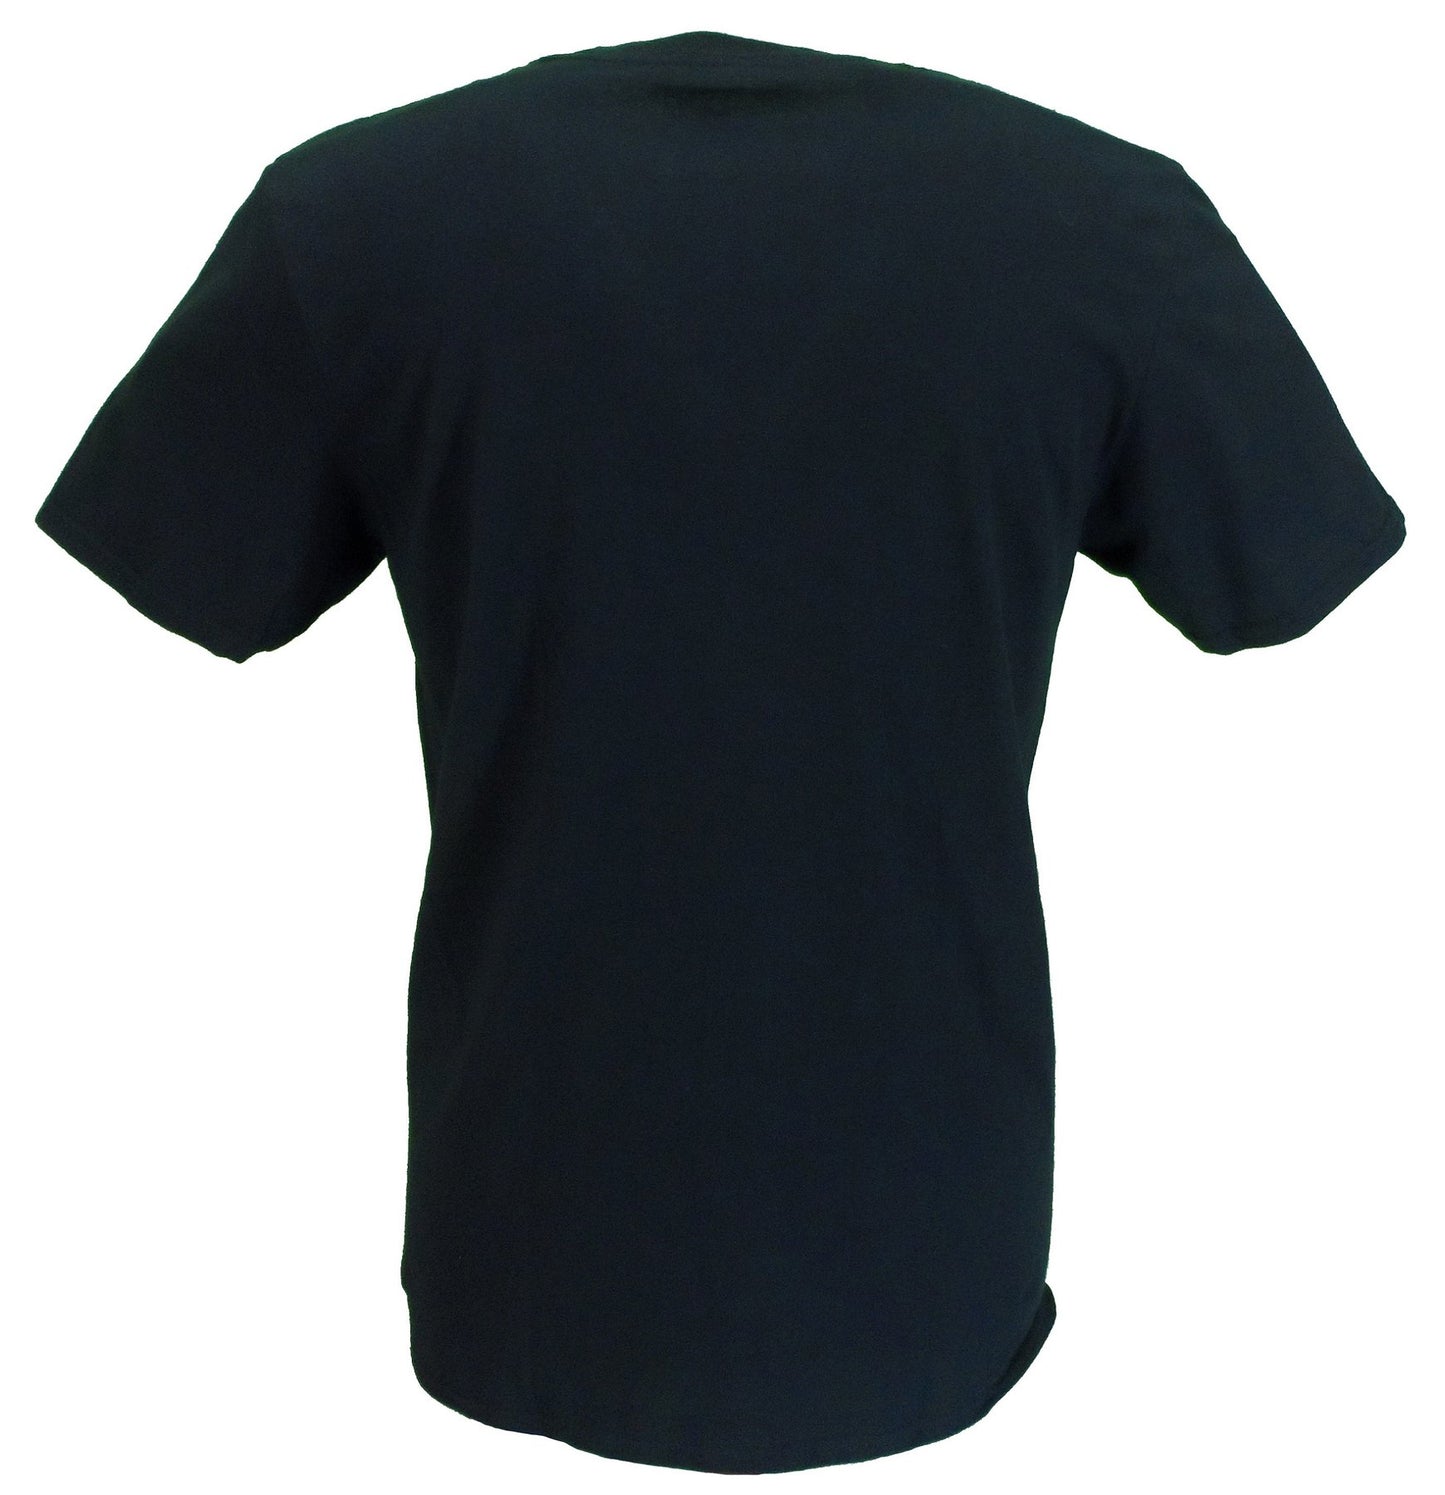 Offizielles Herren-T-Shirt mit weißem Spray-Logo und Untertönen in Schwarz